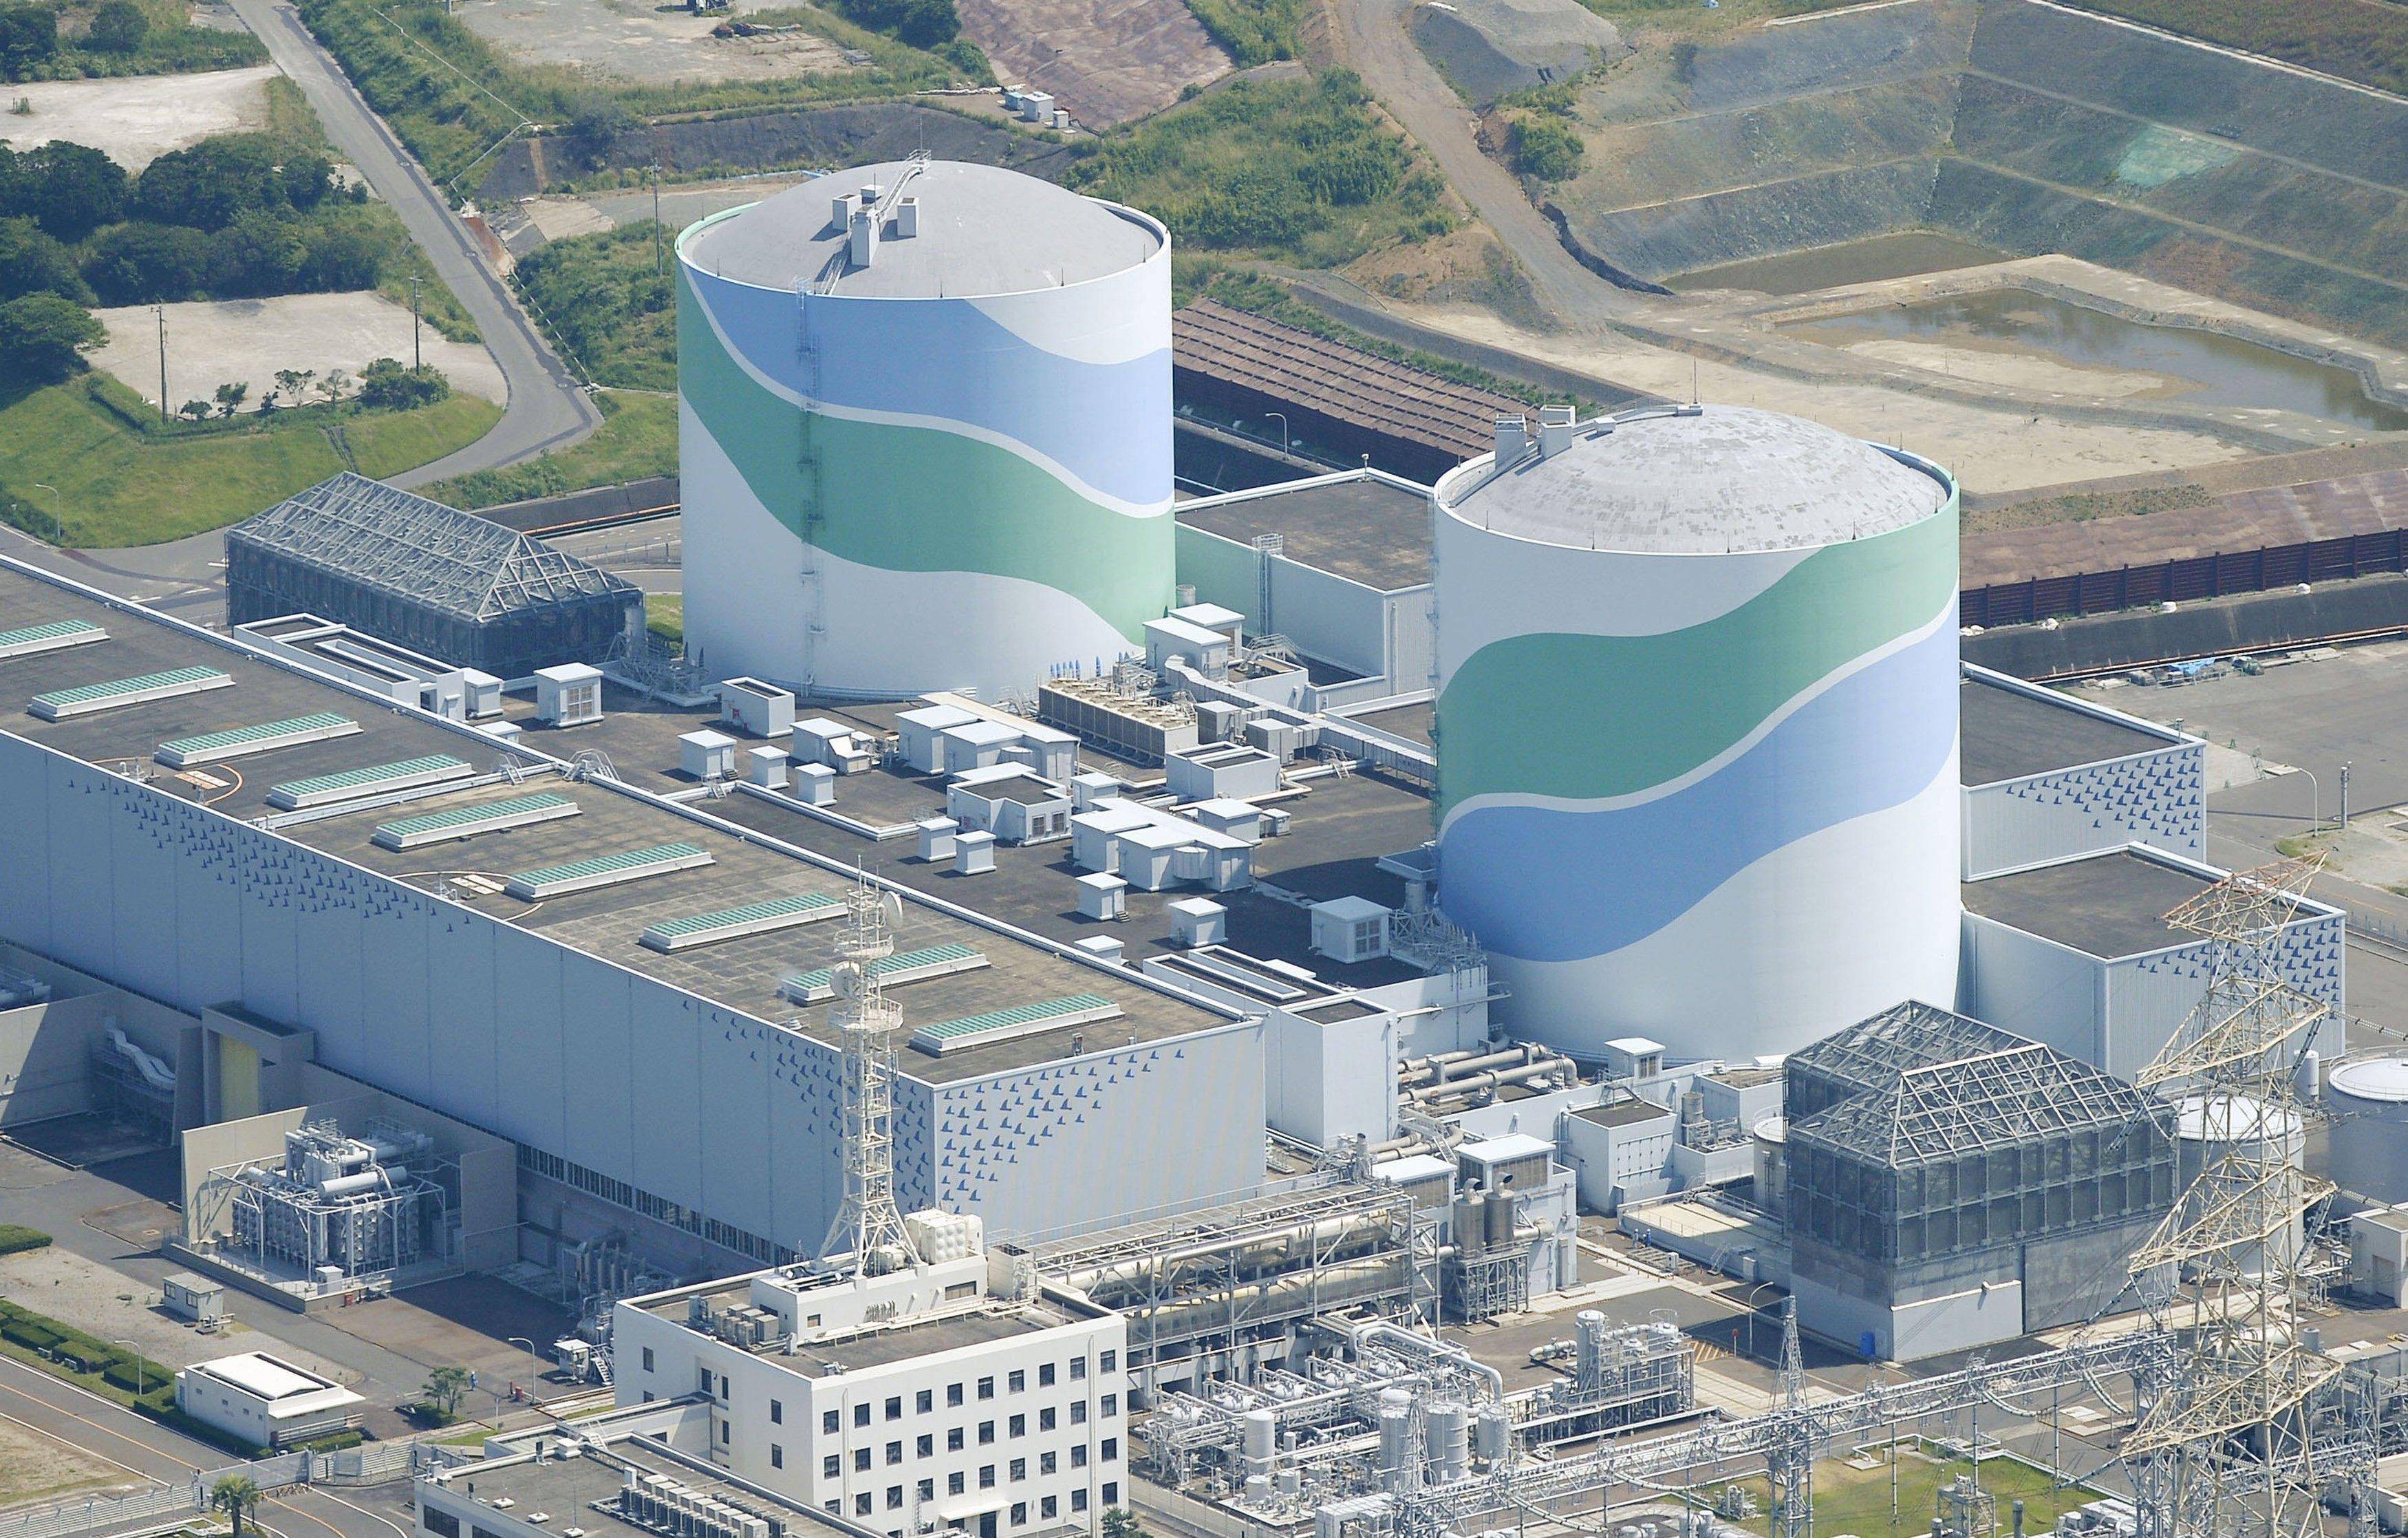 福岛核电站有再次爆炸的可能?会对中国有